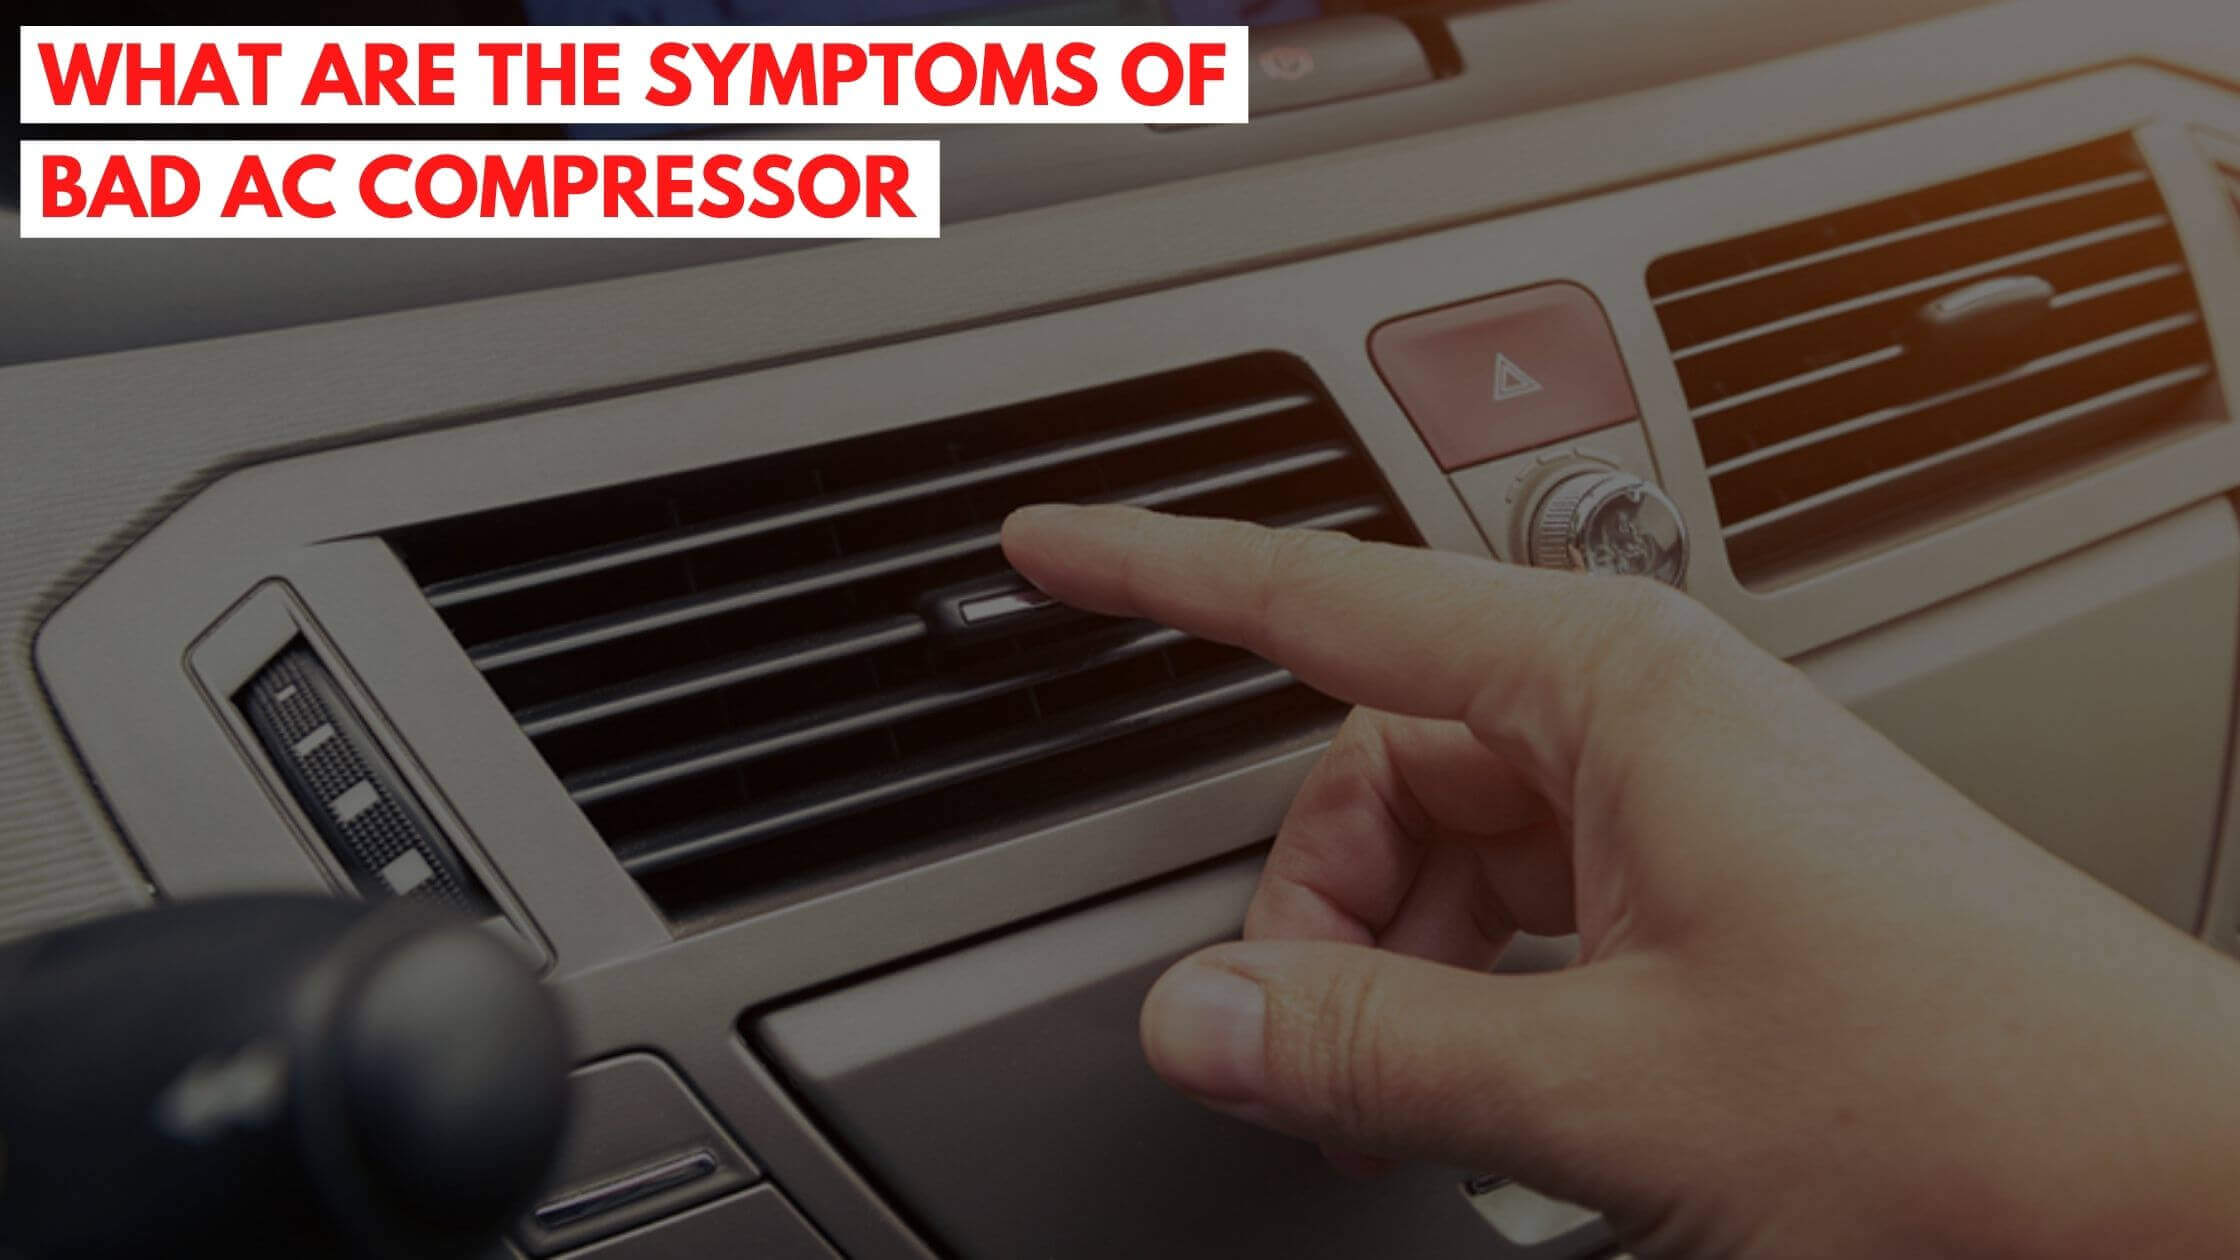 Symptoms of bad AC compressor